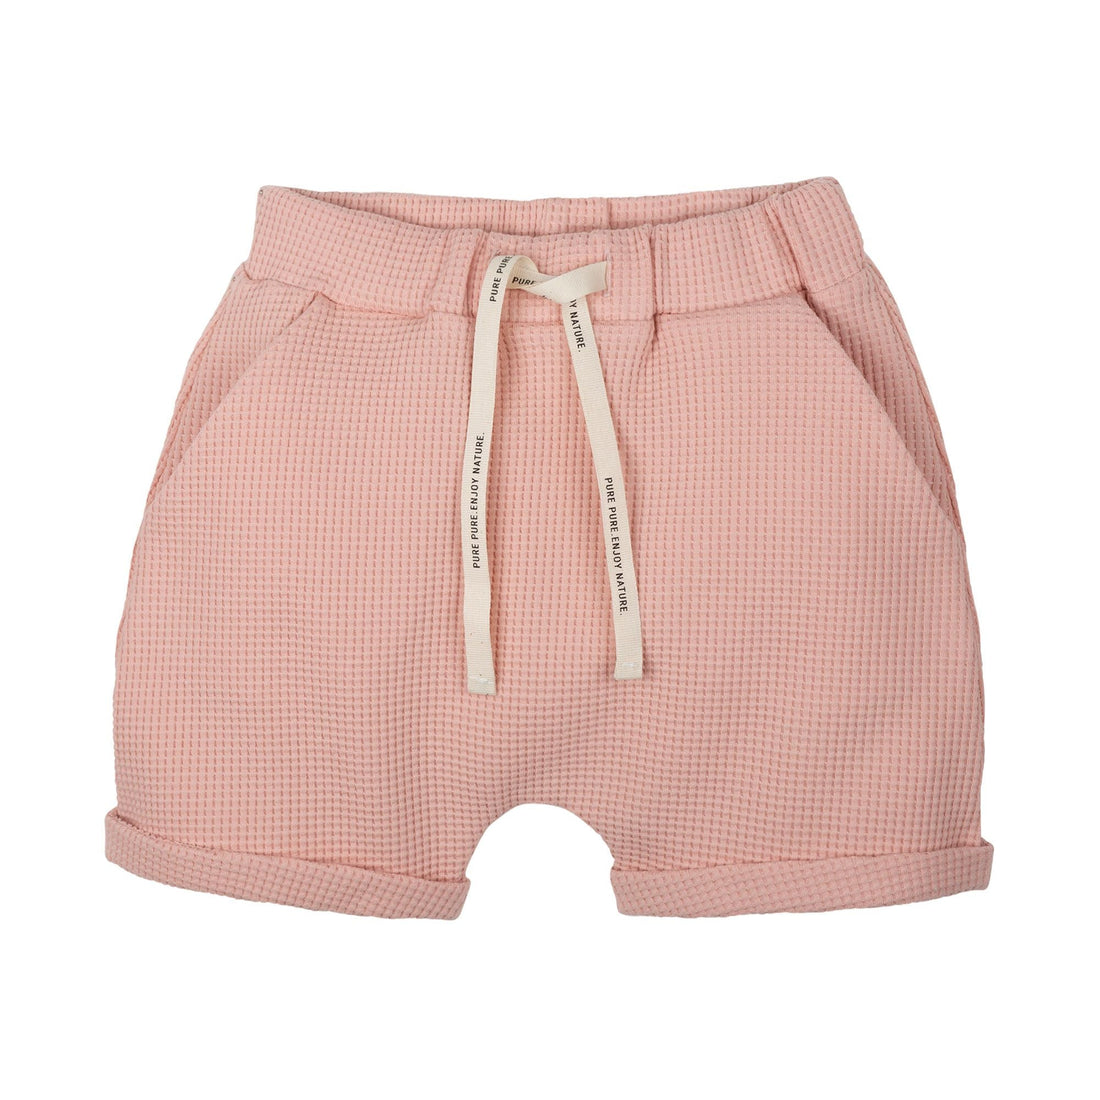 Kurze Hose aus Baumwolle mit Waffle-Muster in rosa von Pure Pure für Mädchen und Jungen.